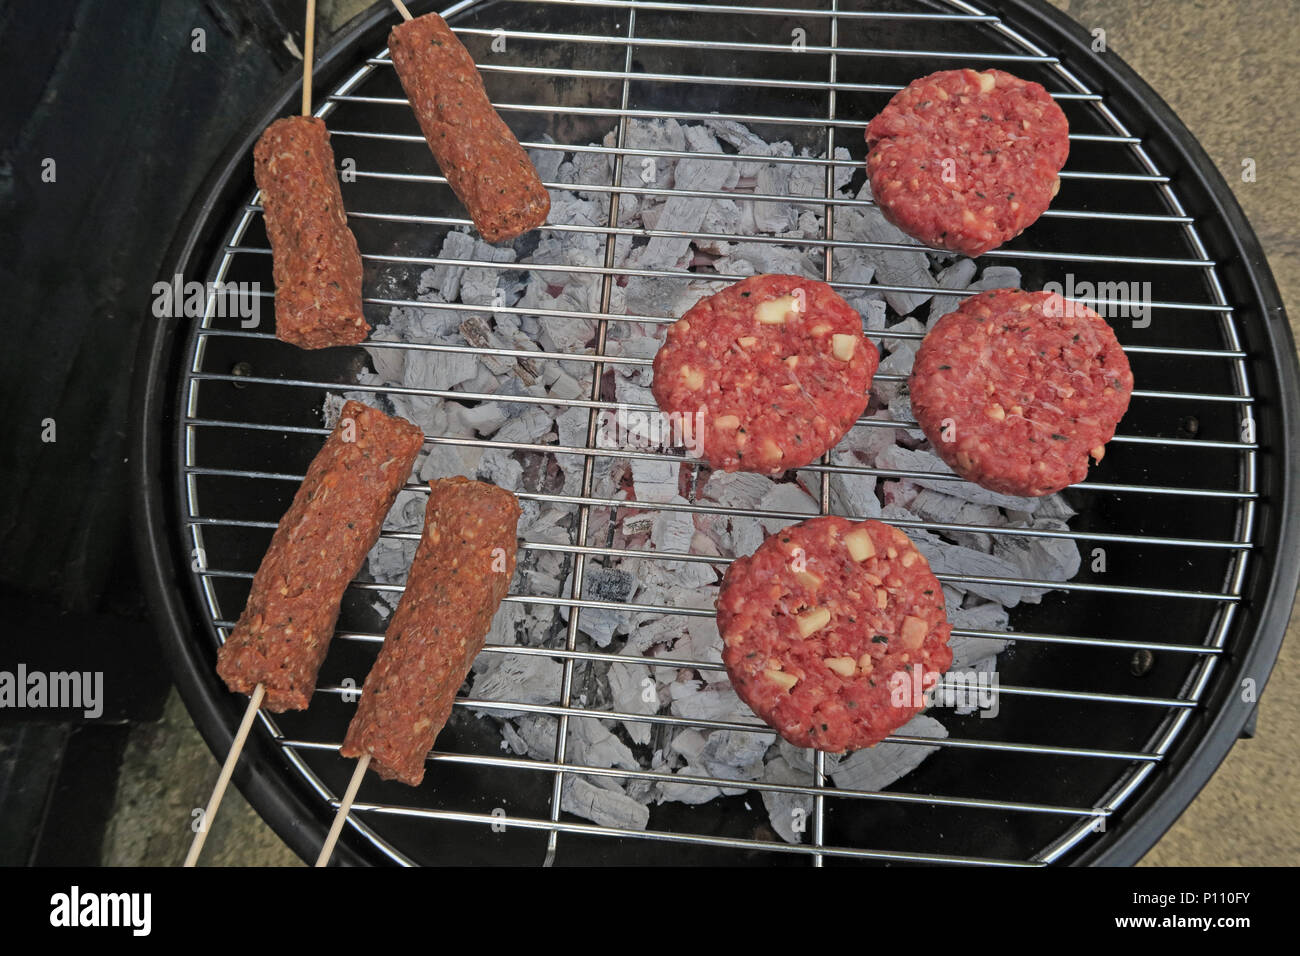 Gefahren der Lebensmittelvergiftung von Sommer BBQ-Fleisch, Wurst, Rindfleisch Burger, Döner, gekocht oder roh Stockfoto